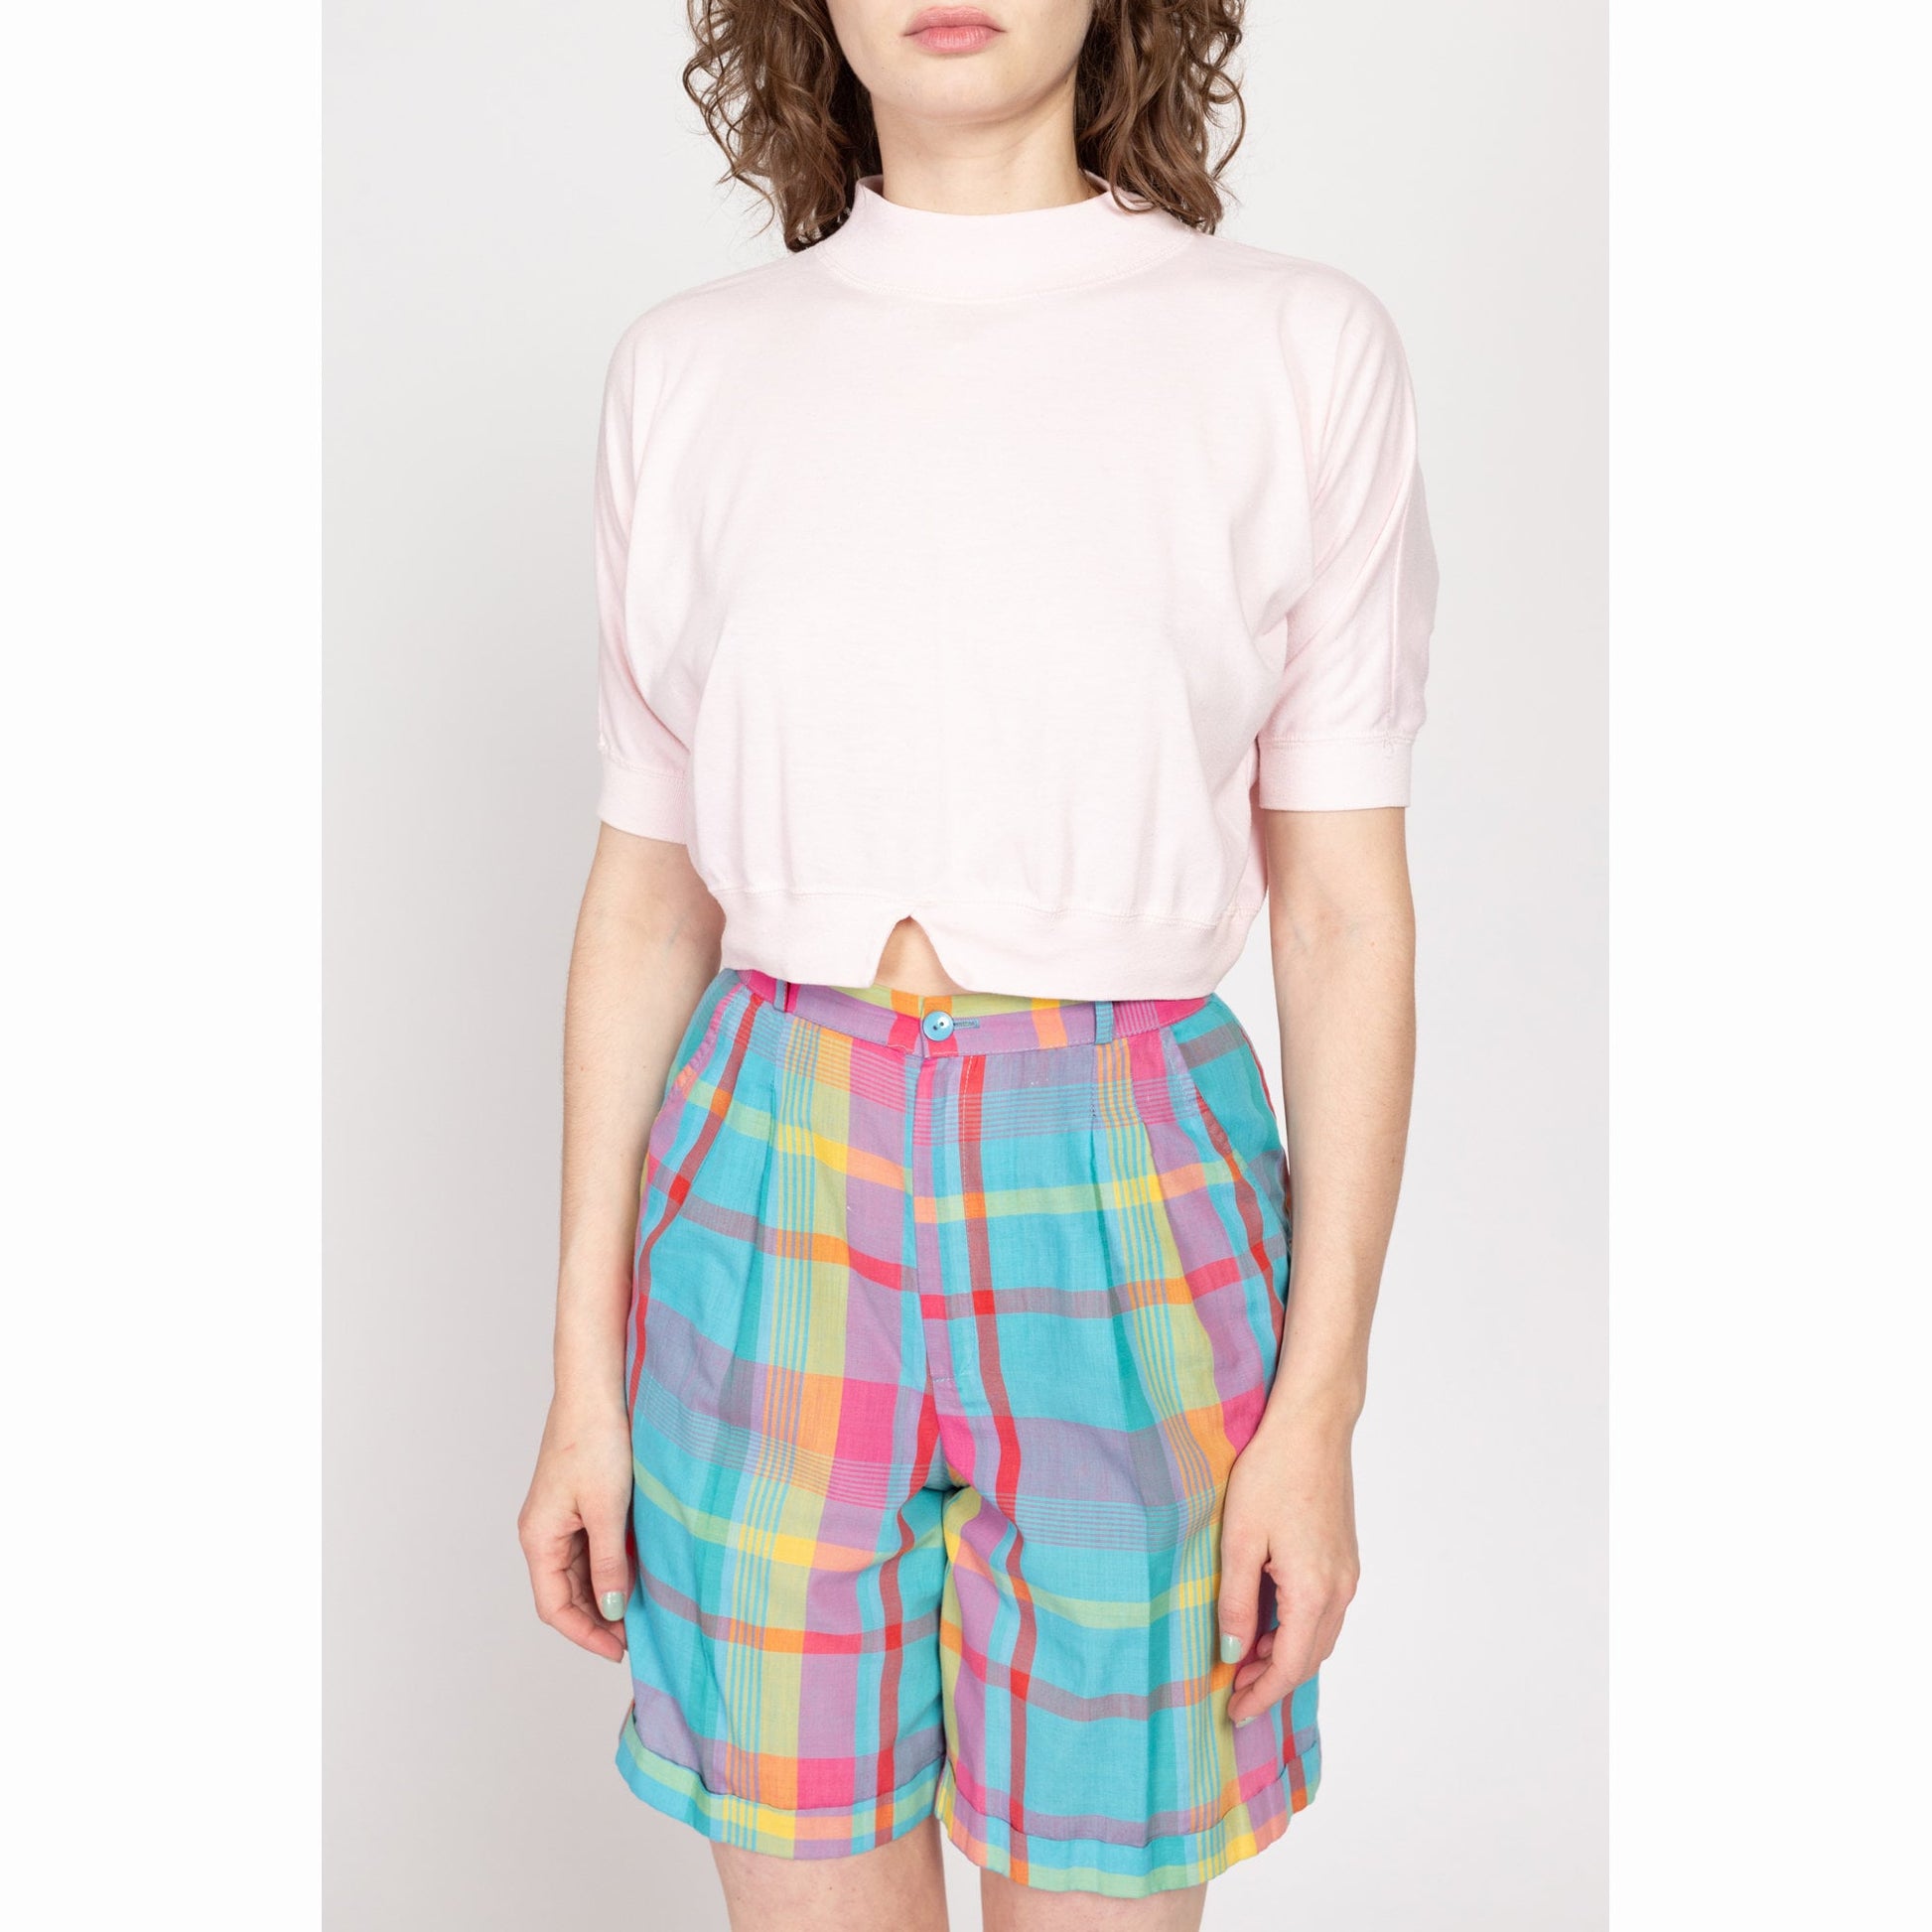 Medium 80s Pastel Pink Mockneck Crop Top | Vintage Plain Notched Waist Short Sleeve Cropped Shirt